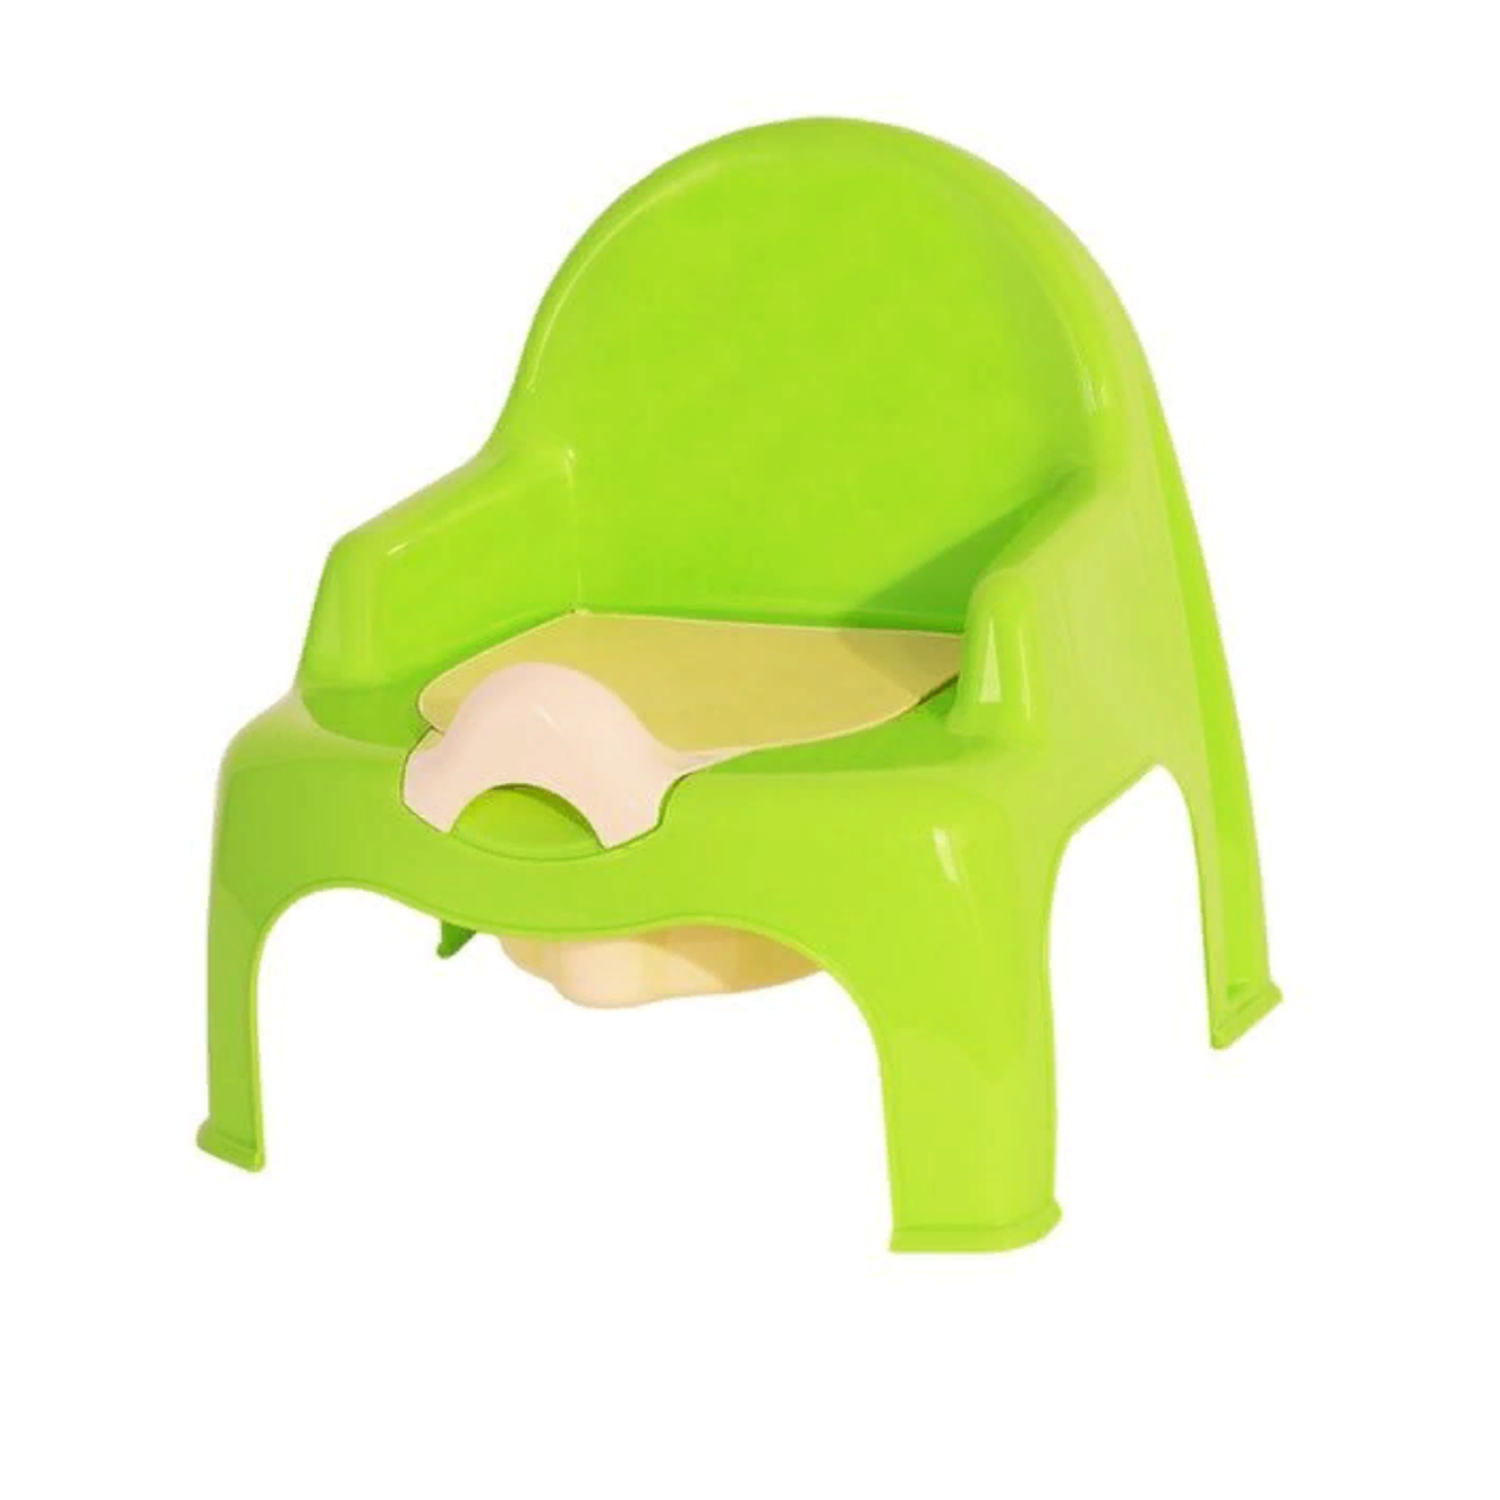 Горшок детский elfplast стульчик детский салатовый кремовый - фото 1